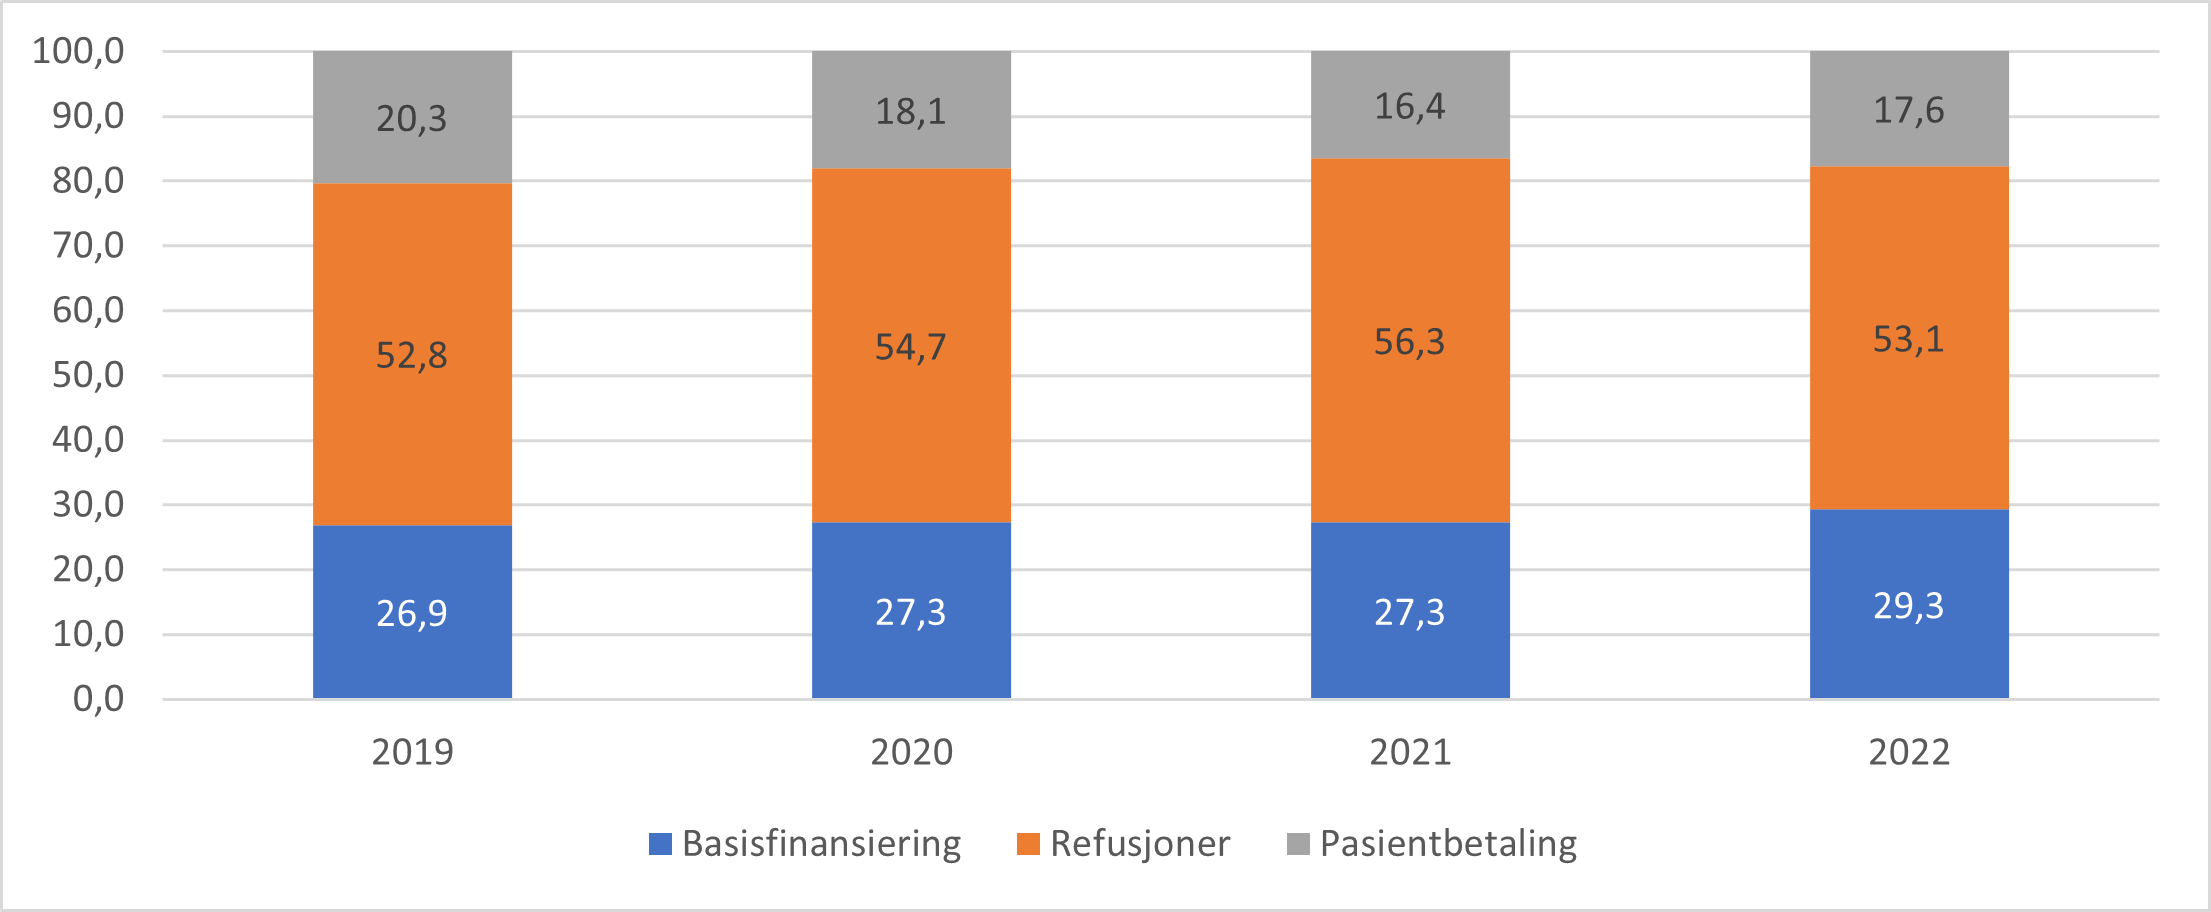 Basisfinansiering, refusjoner og pasientbetaling som prosentvis andel av totale utgifter for fastlegeordningen. 2019 - 2022.